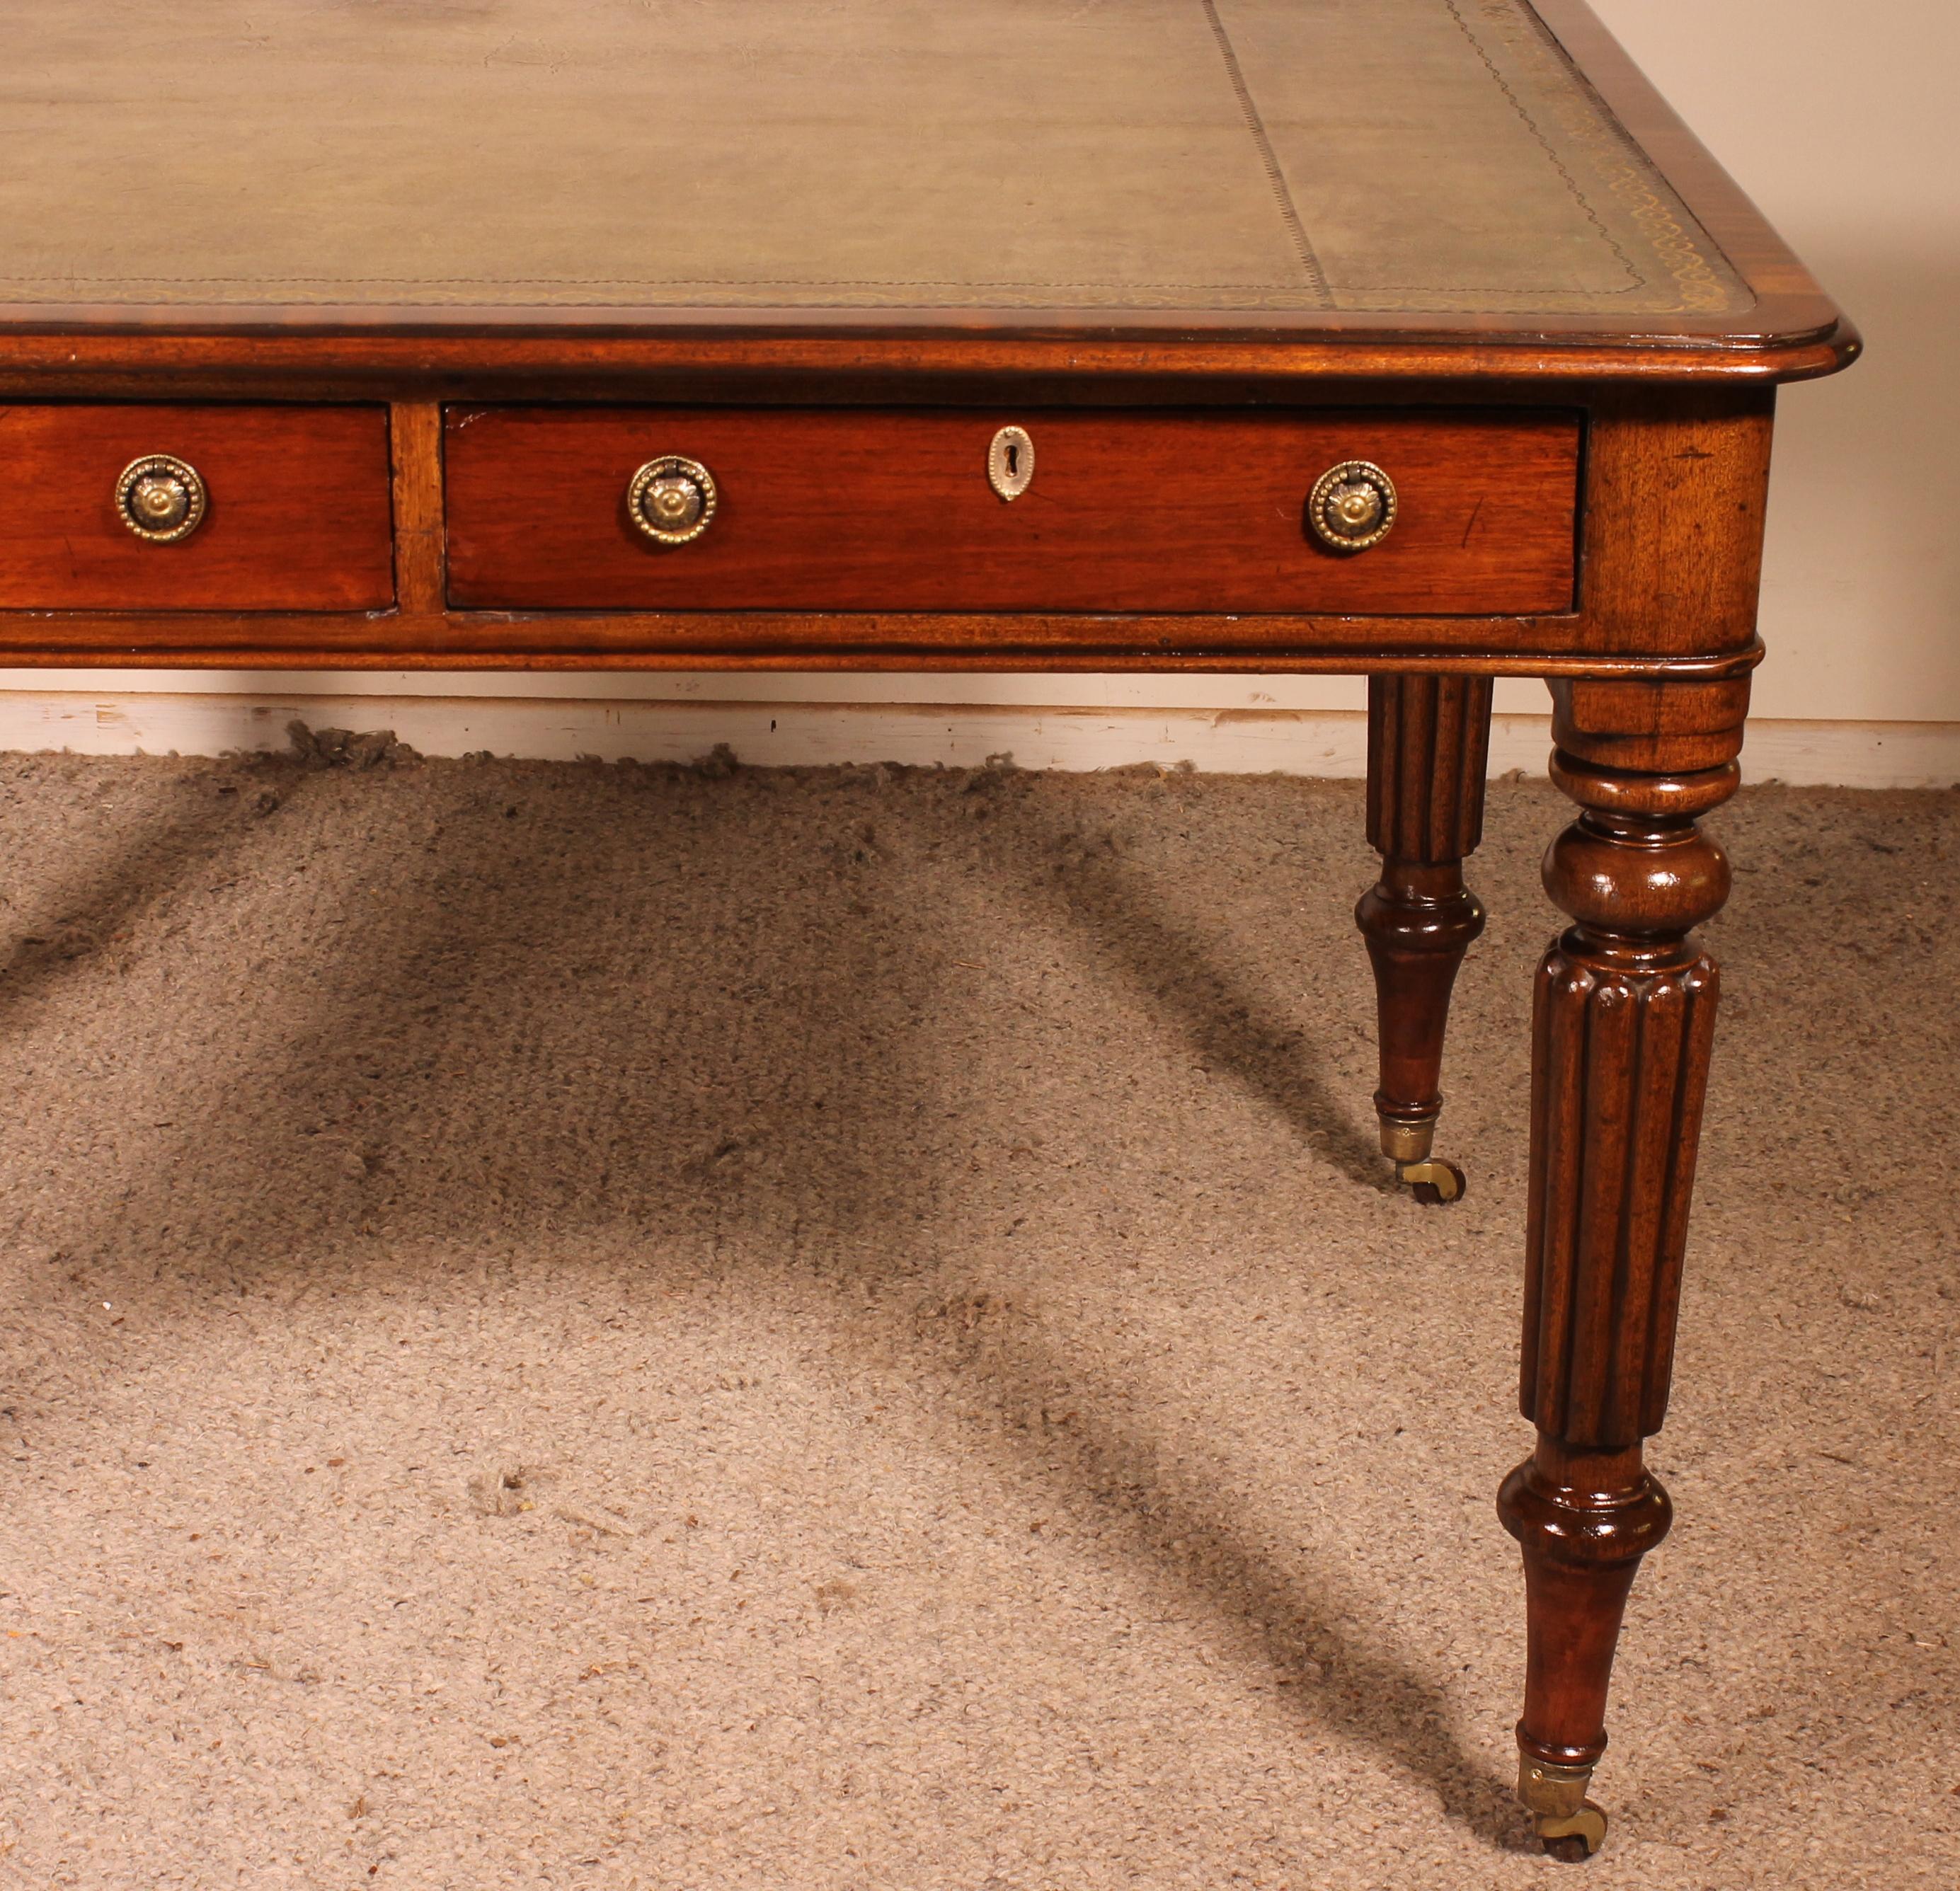 Hervorragender Schreibtisch aus dem 19. Jahrhundert aus englischem Mahagoni.
Eleganter Partnerschreibtisch, der auf jeder Seite zwei Schubladen im Gurt hat. Ein doppelseitiger Schreibtisch ist selten zu finden.
Der Schreibtisch ruht auf einem